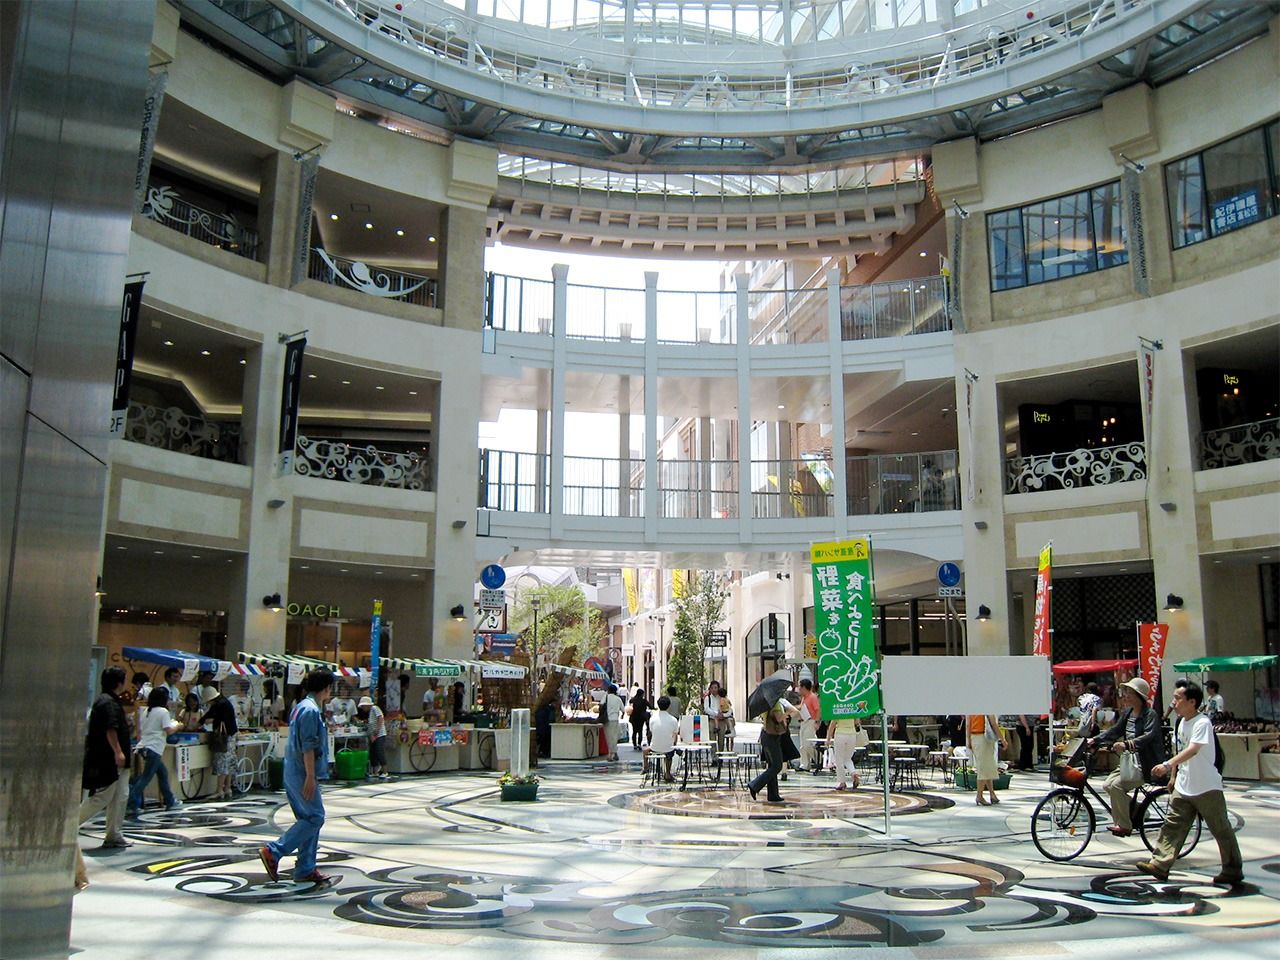 الساحة المغطاة بالقبة الزجاجية في منطقة ماروغمى ماتشي للتسوق عادت مرة أخرى مركزًا حيويًا لمدينة تاكاماتسو.